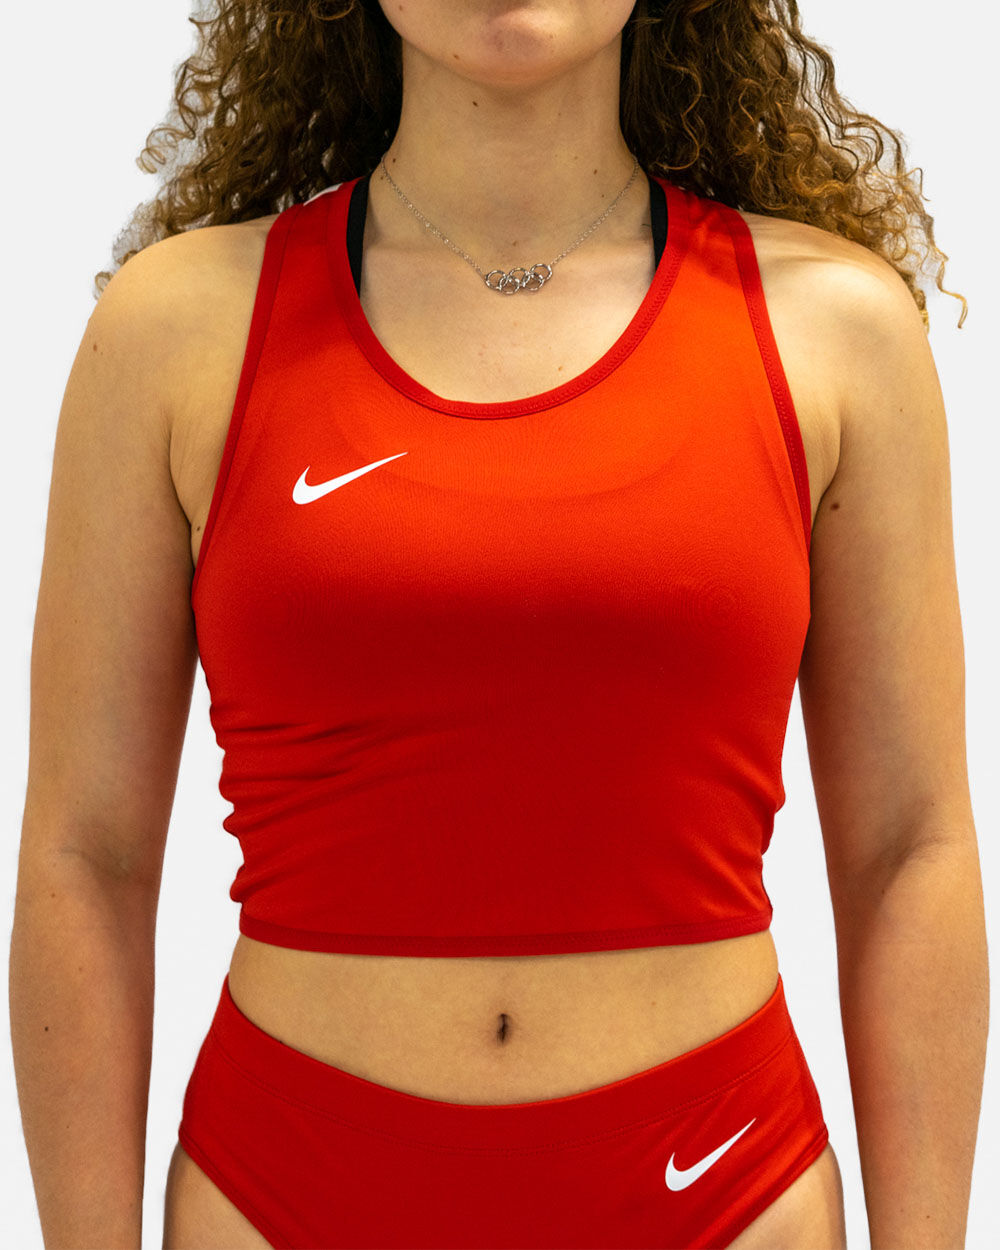 Camiseta sin mangas de running Nike Stock Rojo para Mujeres - NT0312-657